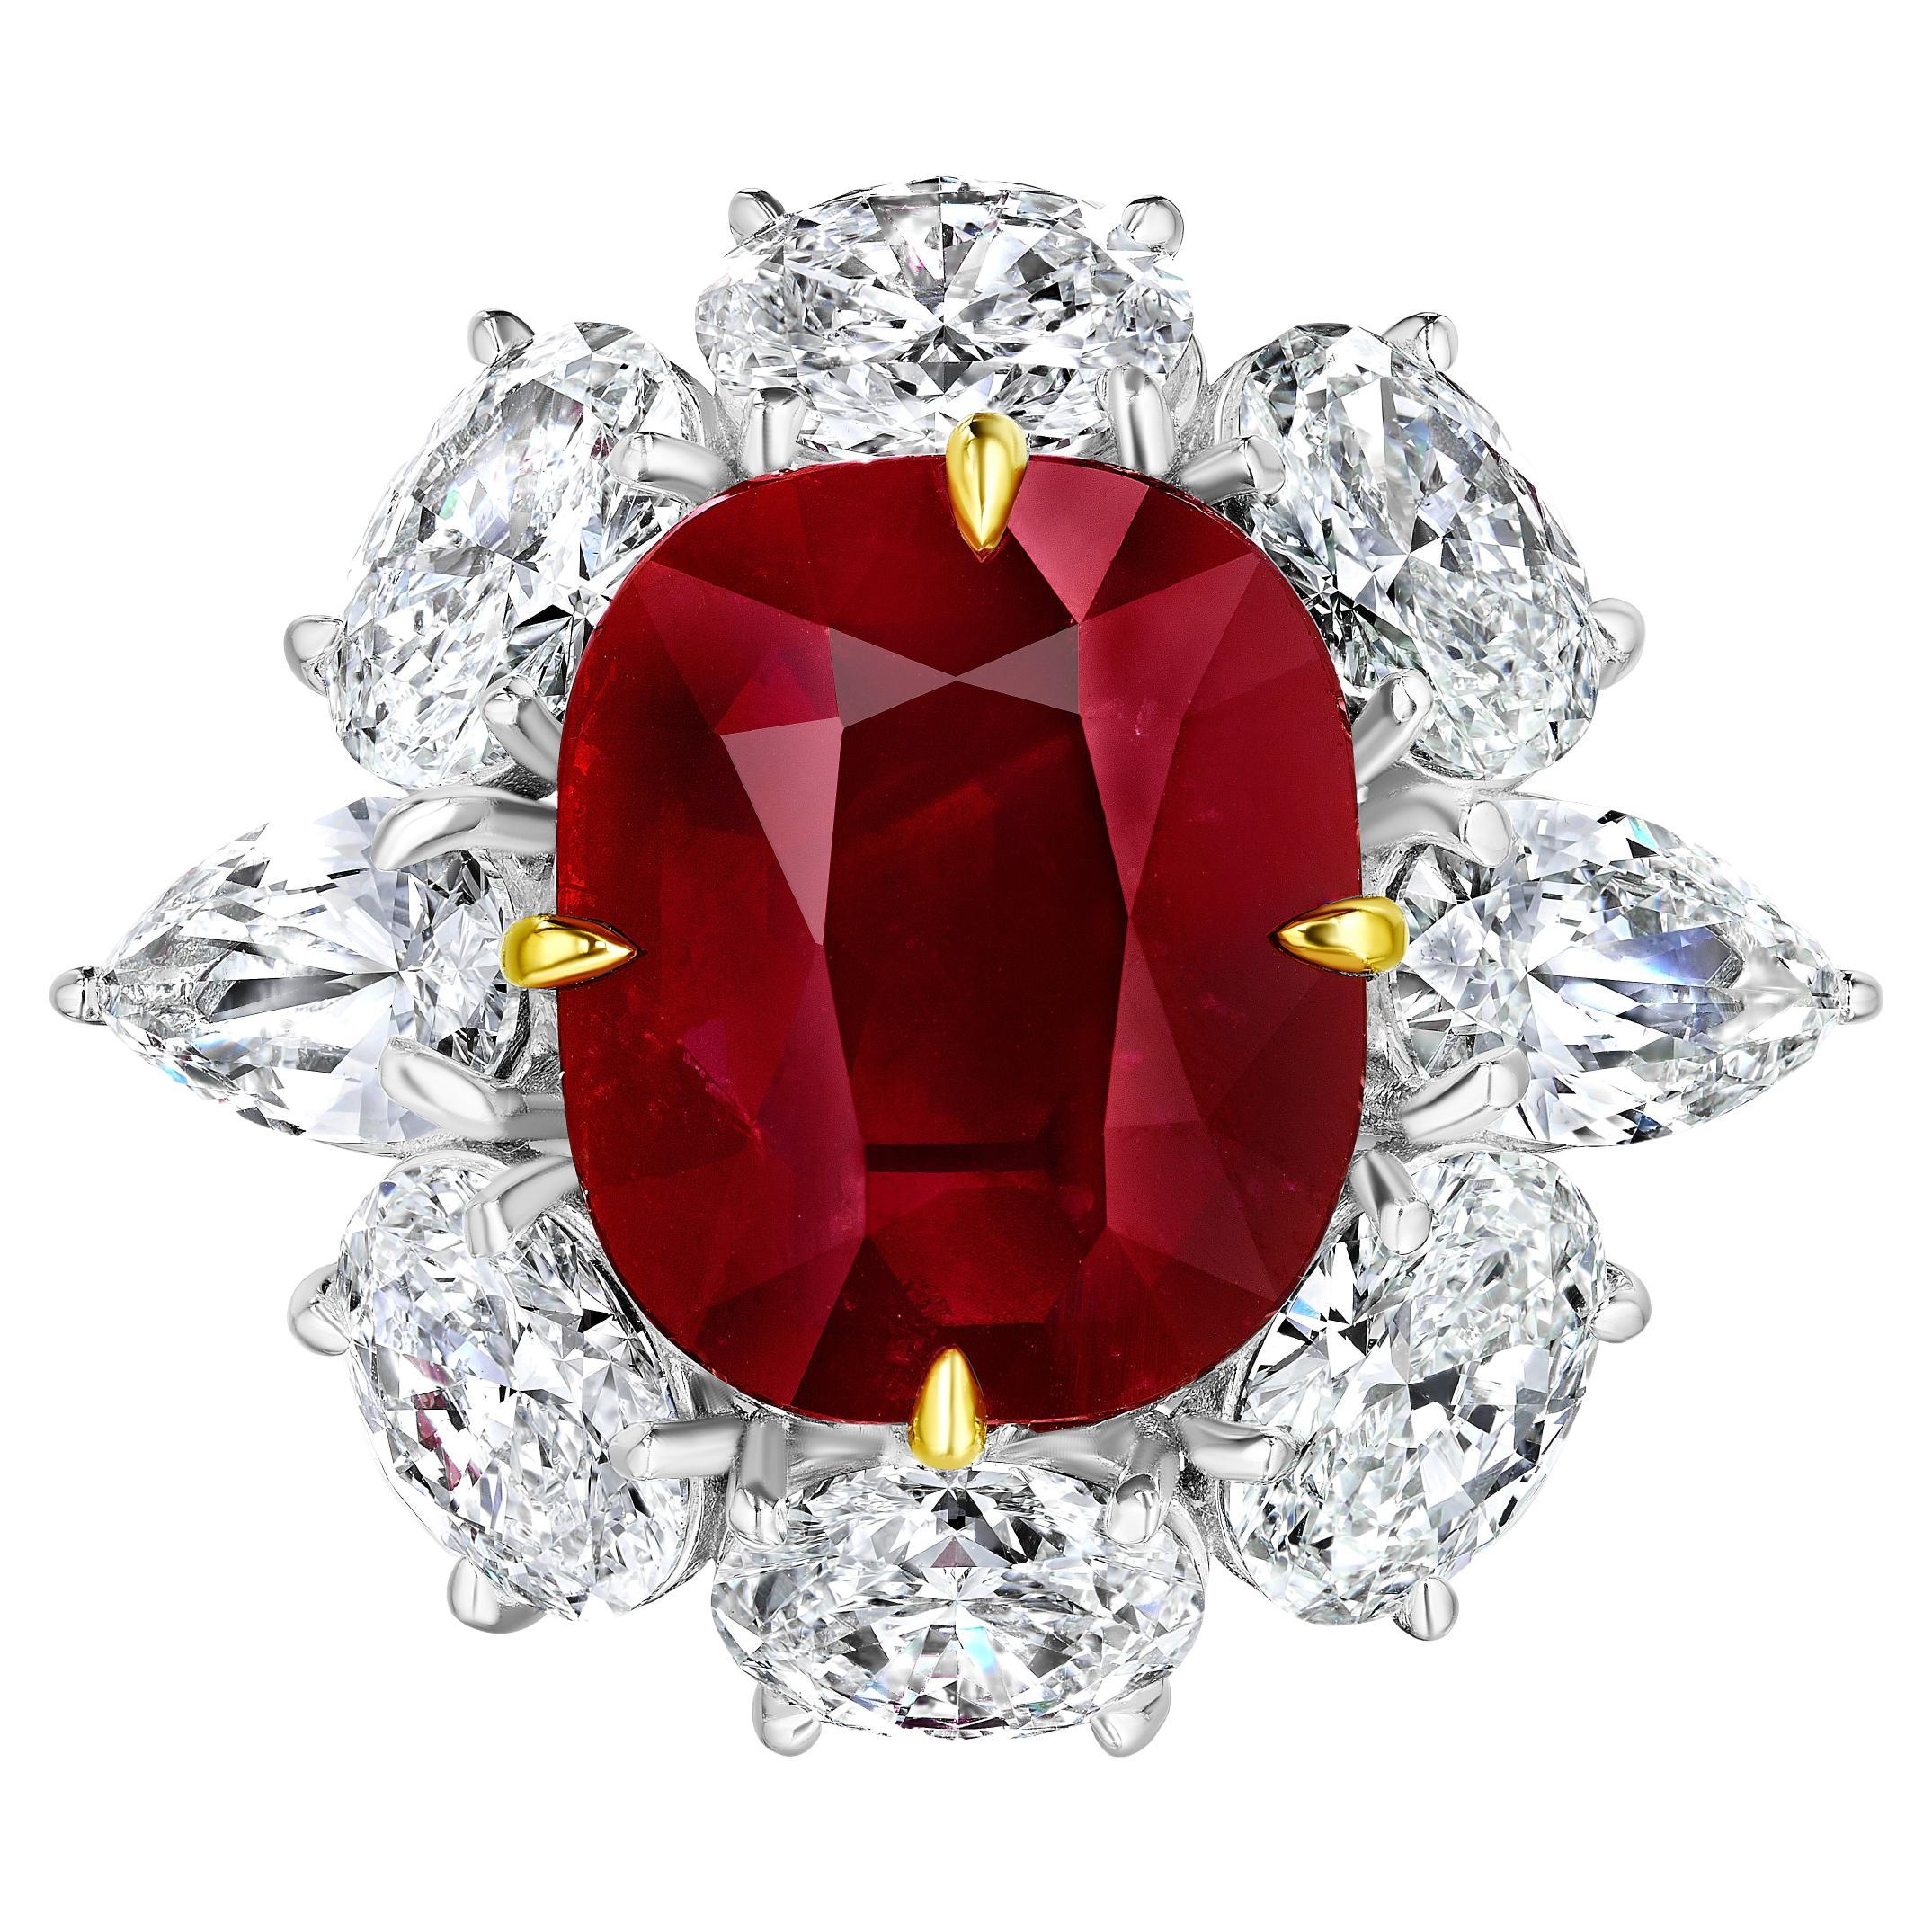 Bague en rubis de Birmanie non chauffé et diamants de 6,55 carats certifiés AGL